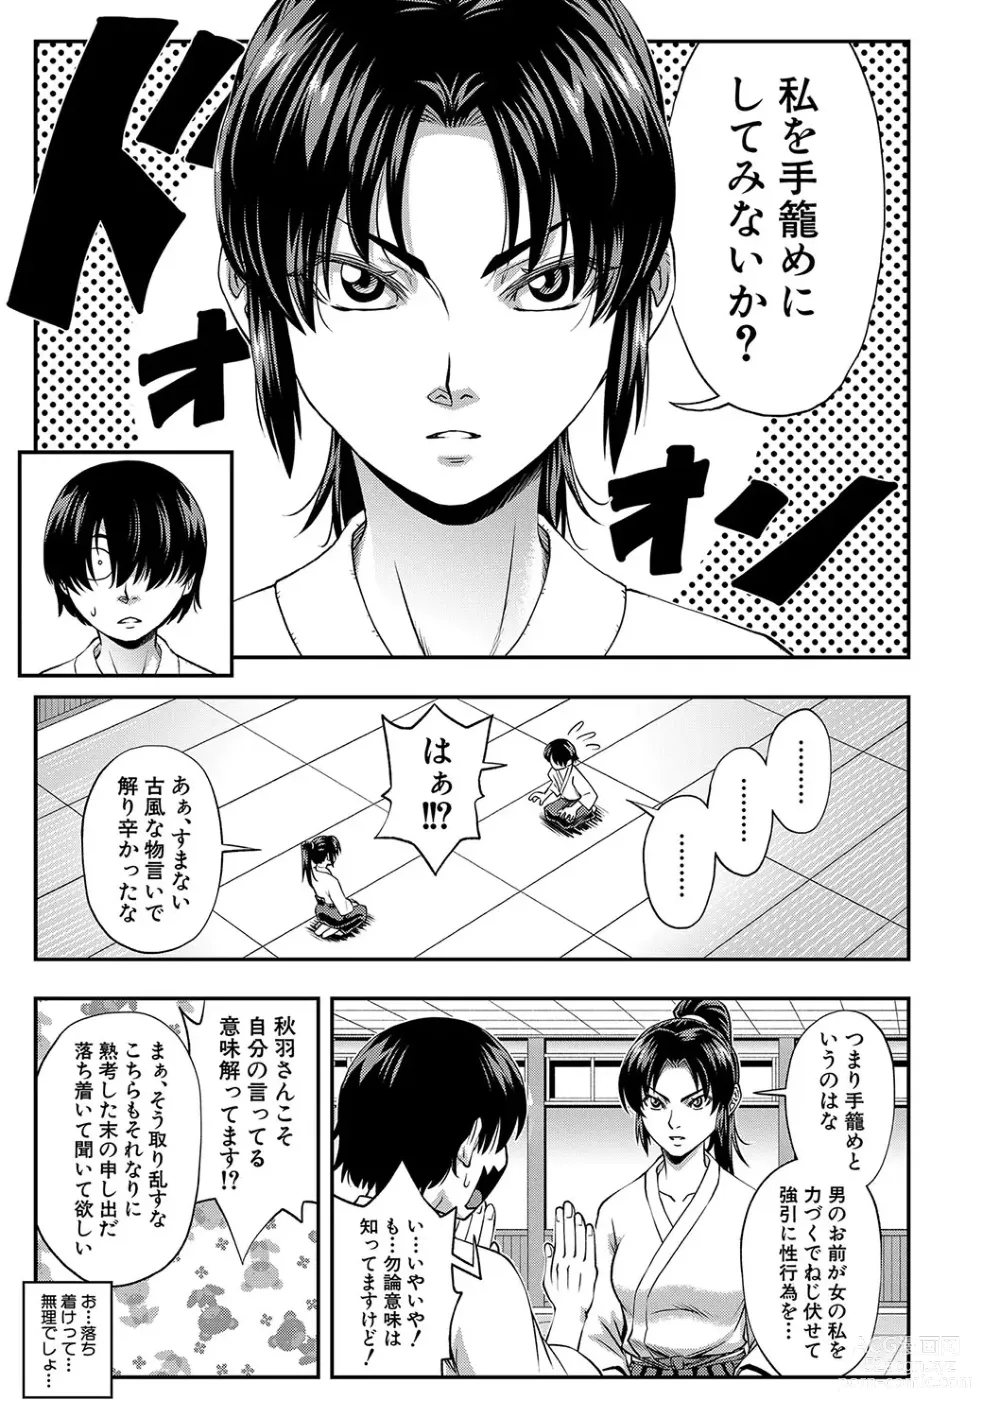 Page 6 of manga Yareba Yaru Hodo Suki ni Naru